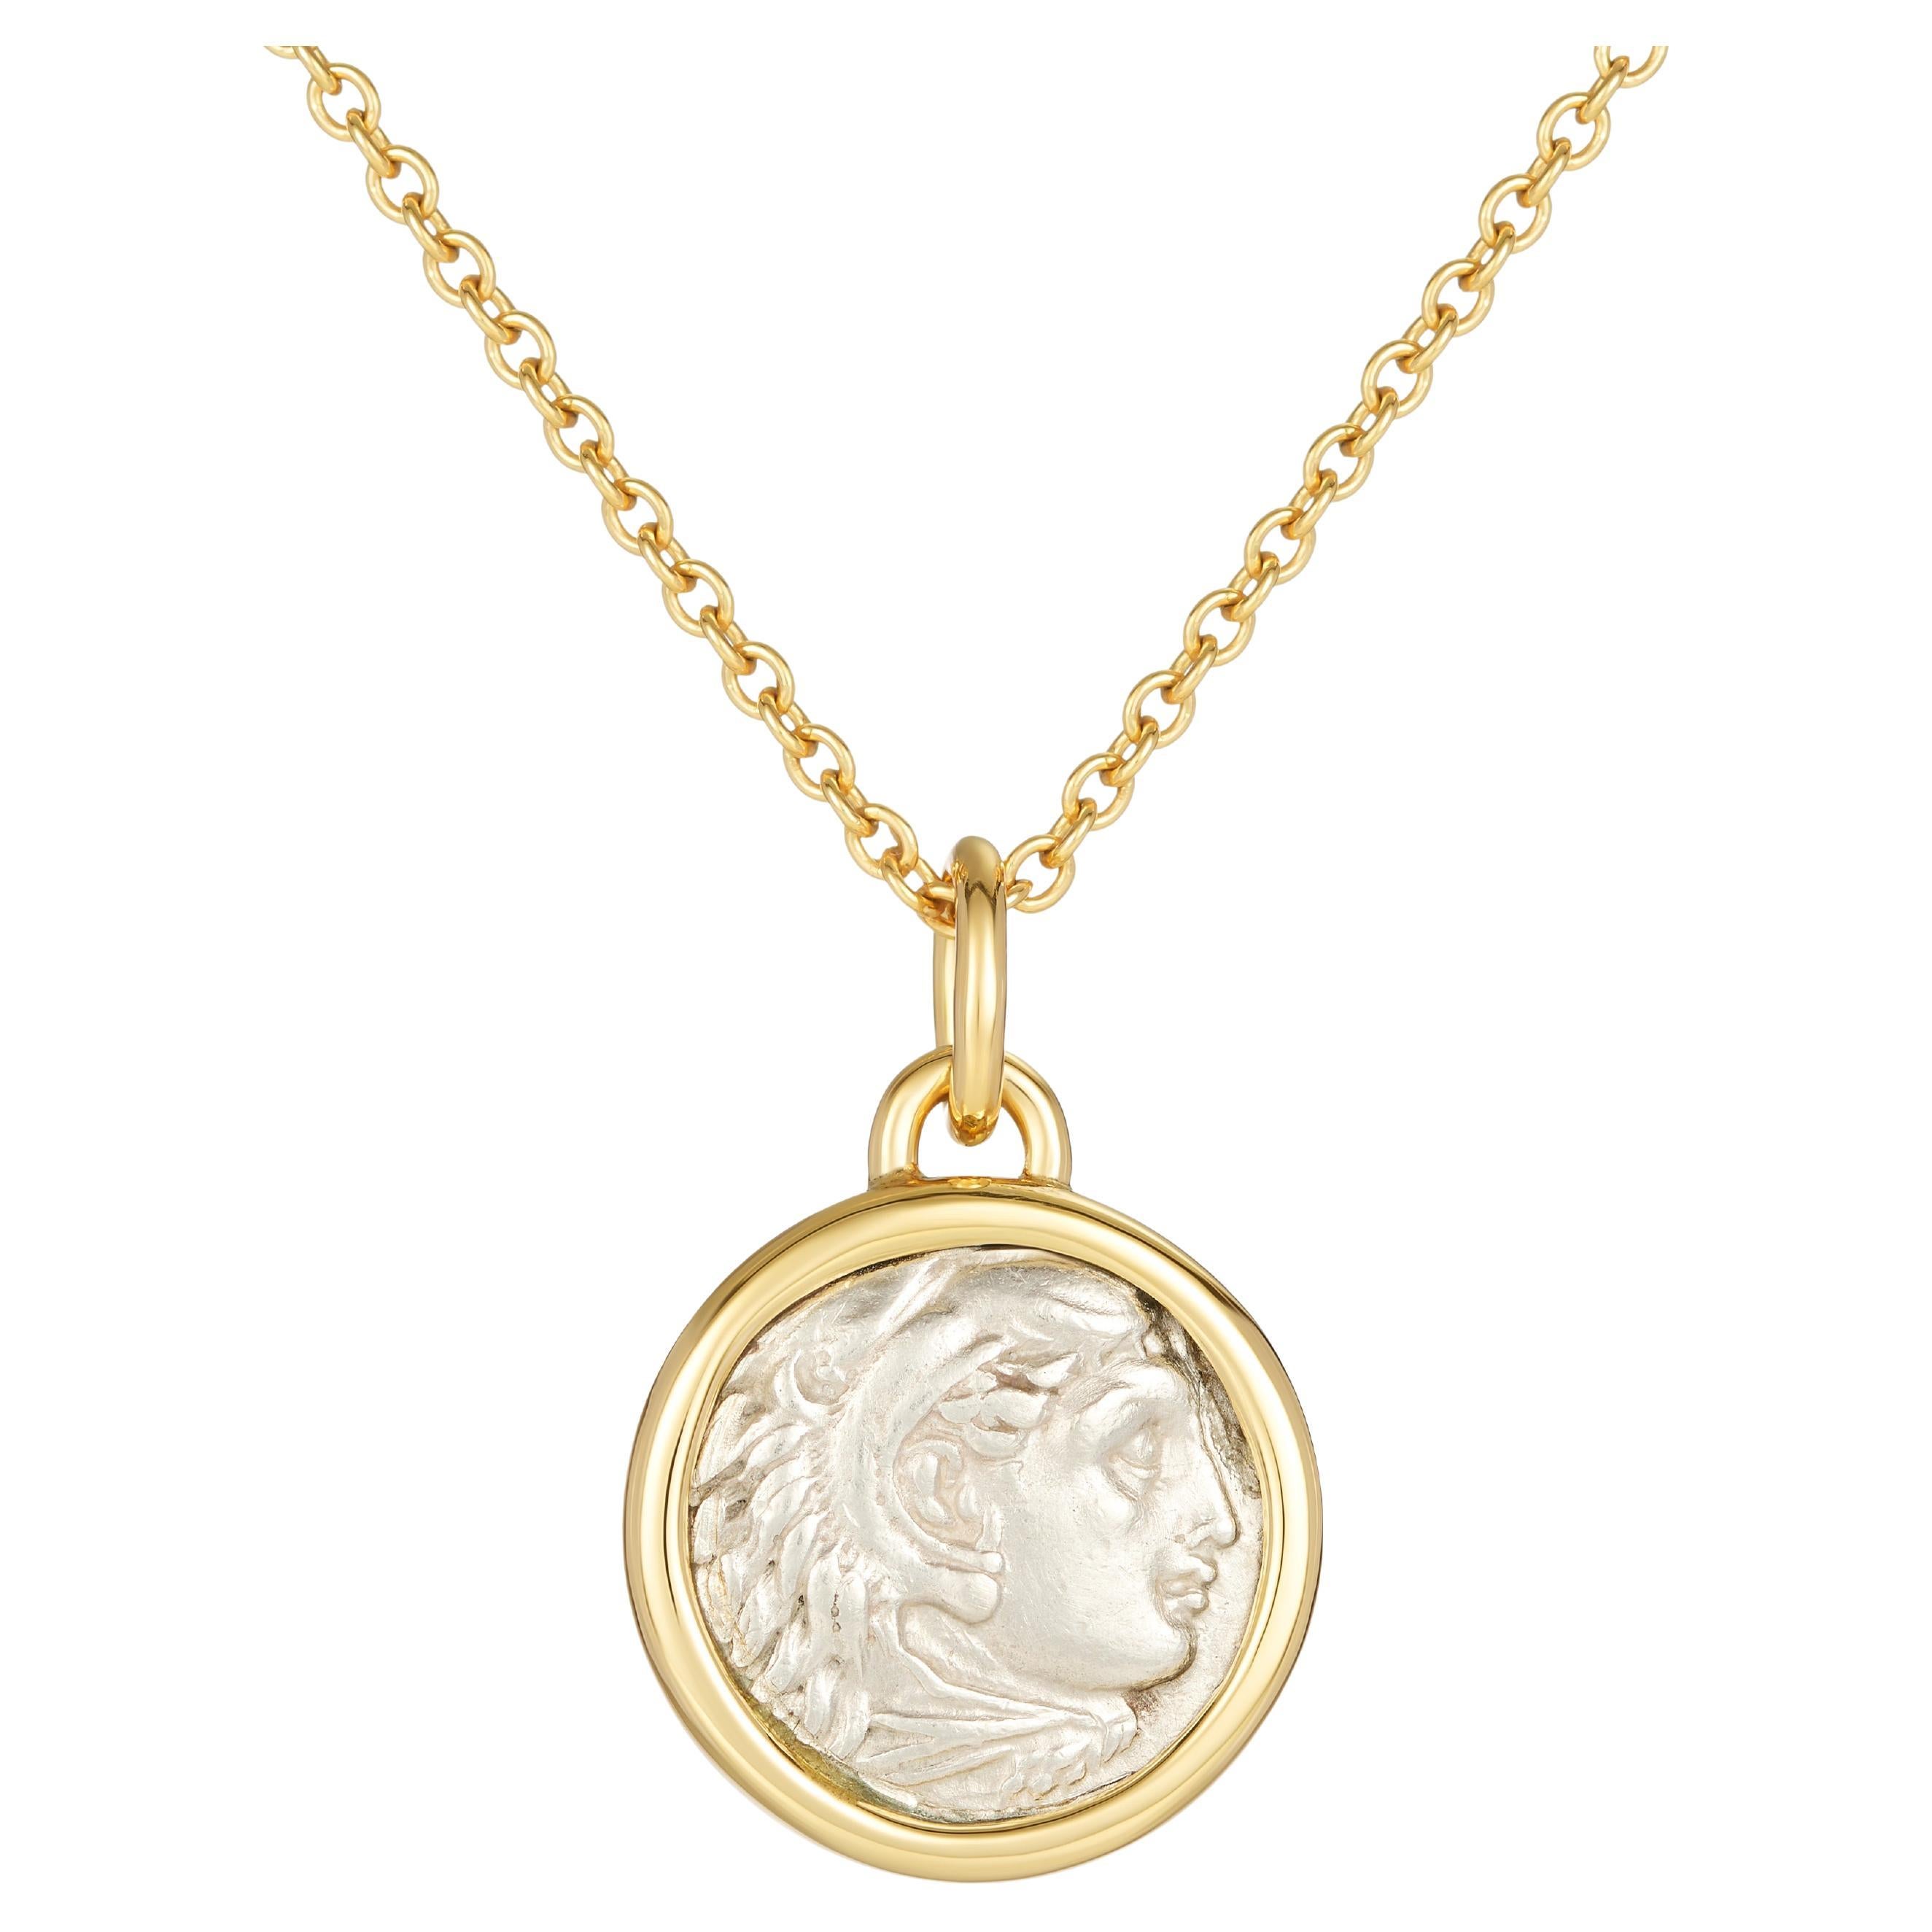 Dubini Alexander, collier pendentif « The Great Silver Coin » en or 18 carats